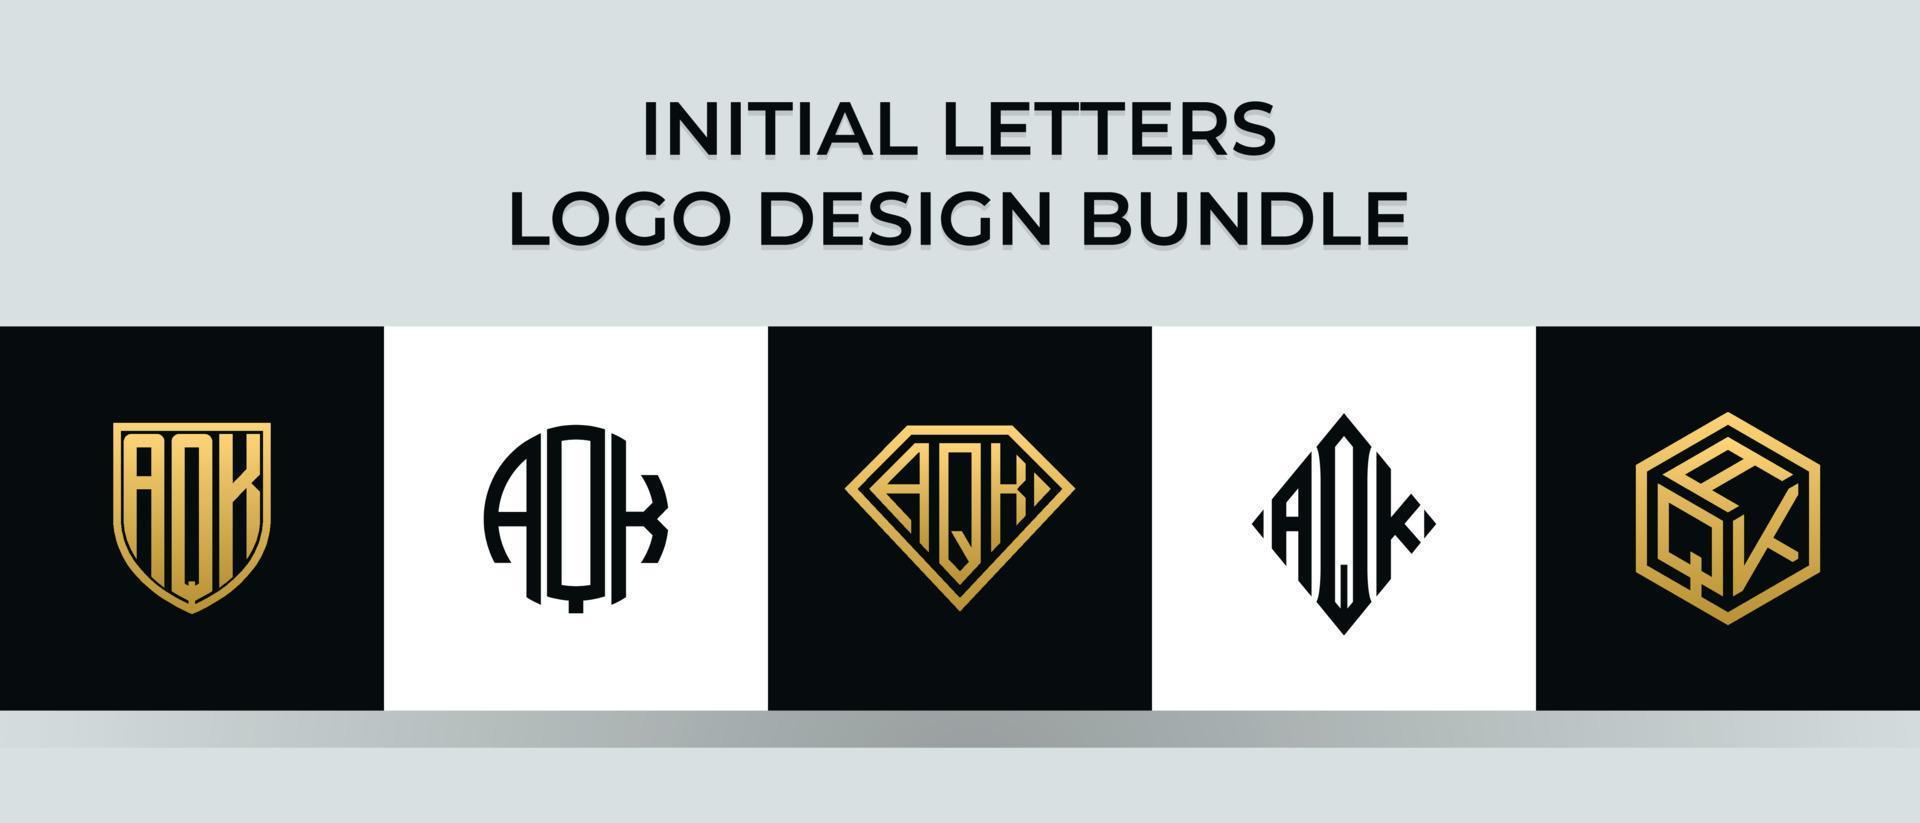 lettere iniziali aqk logo design bundle vettore